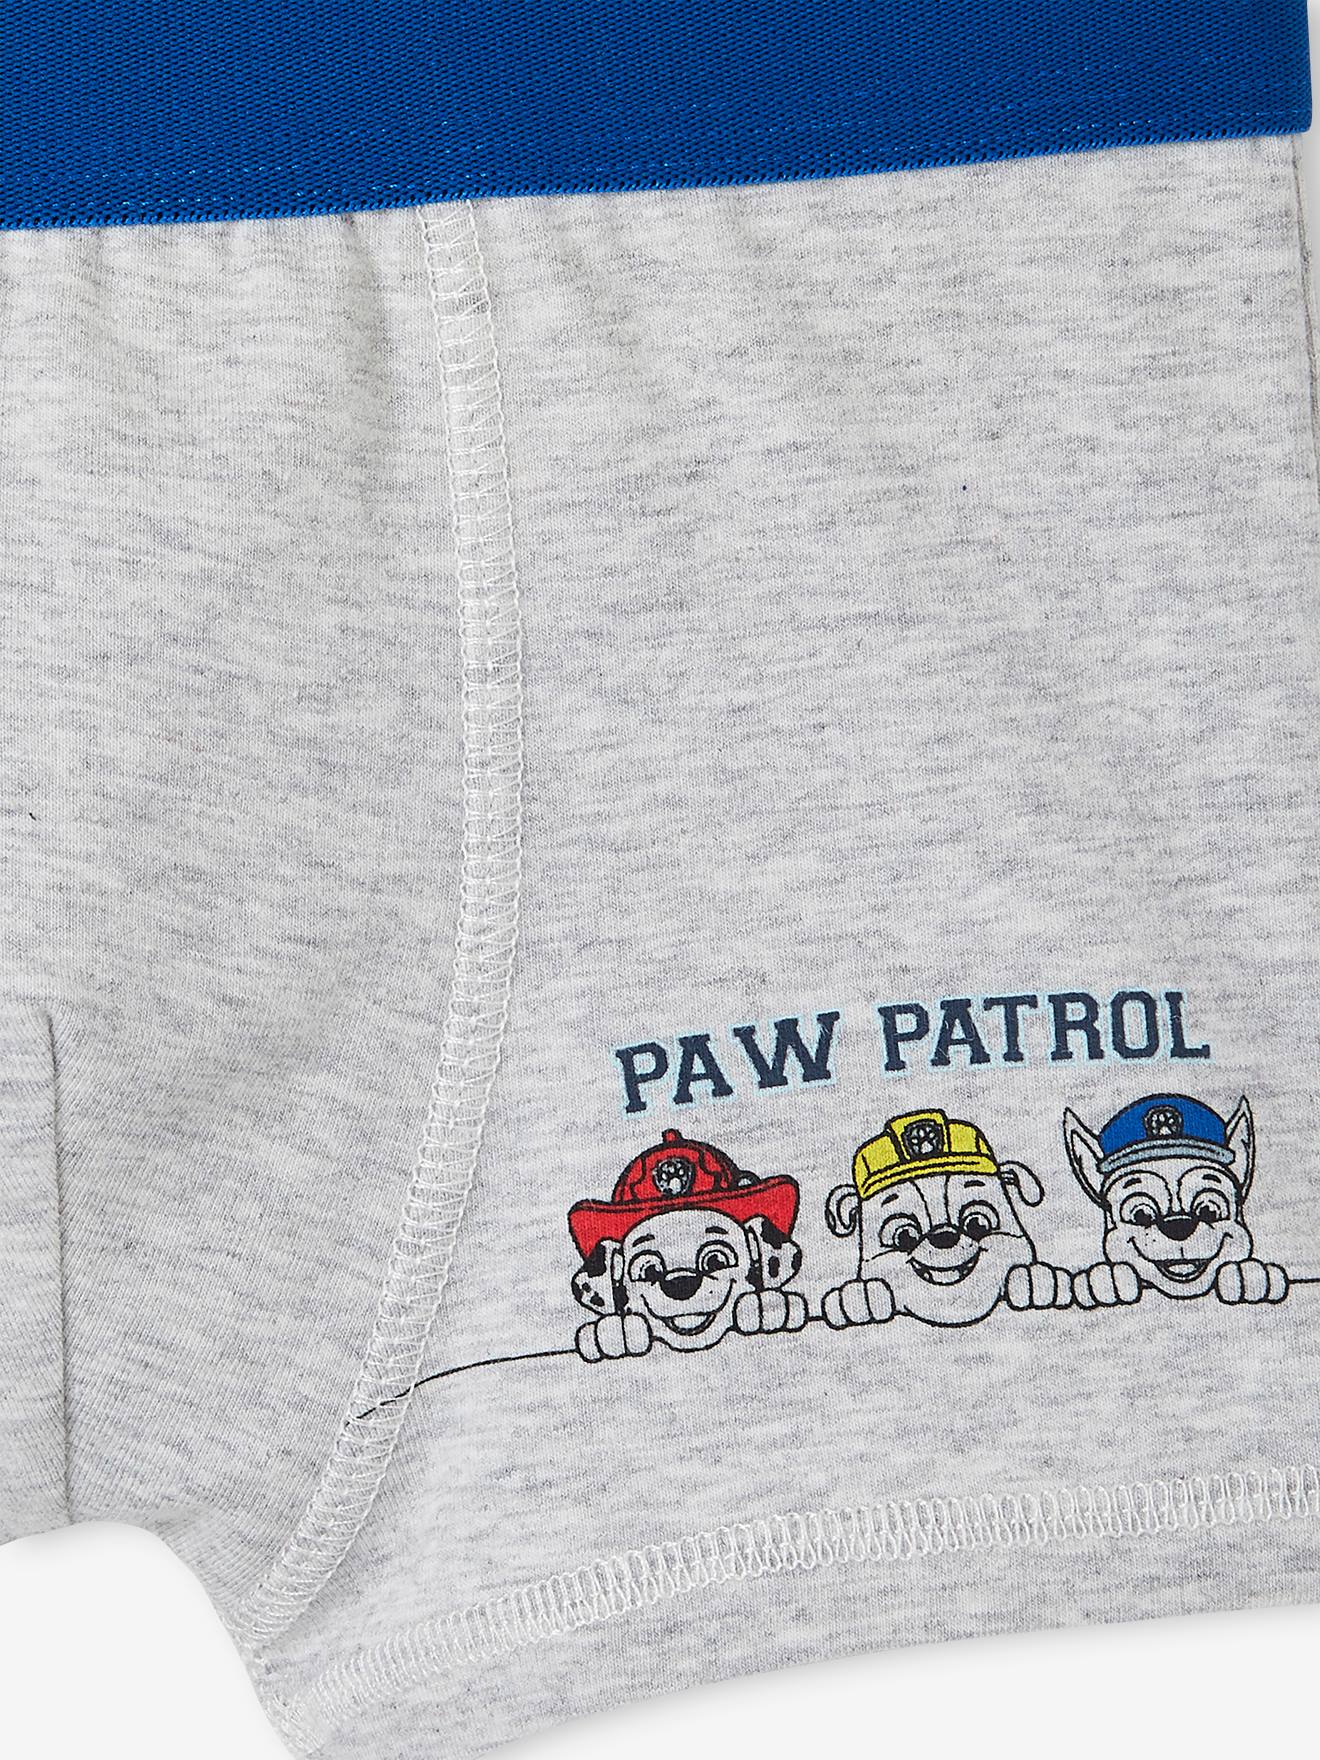 PAW Patrol, Boys Underwear, 2 Pack Boxer Brief (Little Boys & Big Boys)